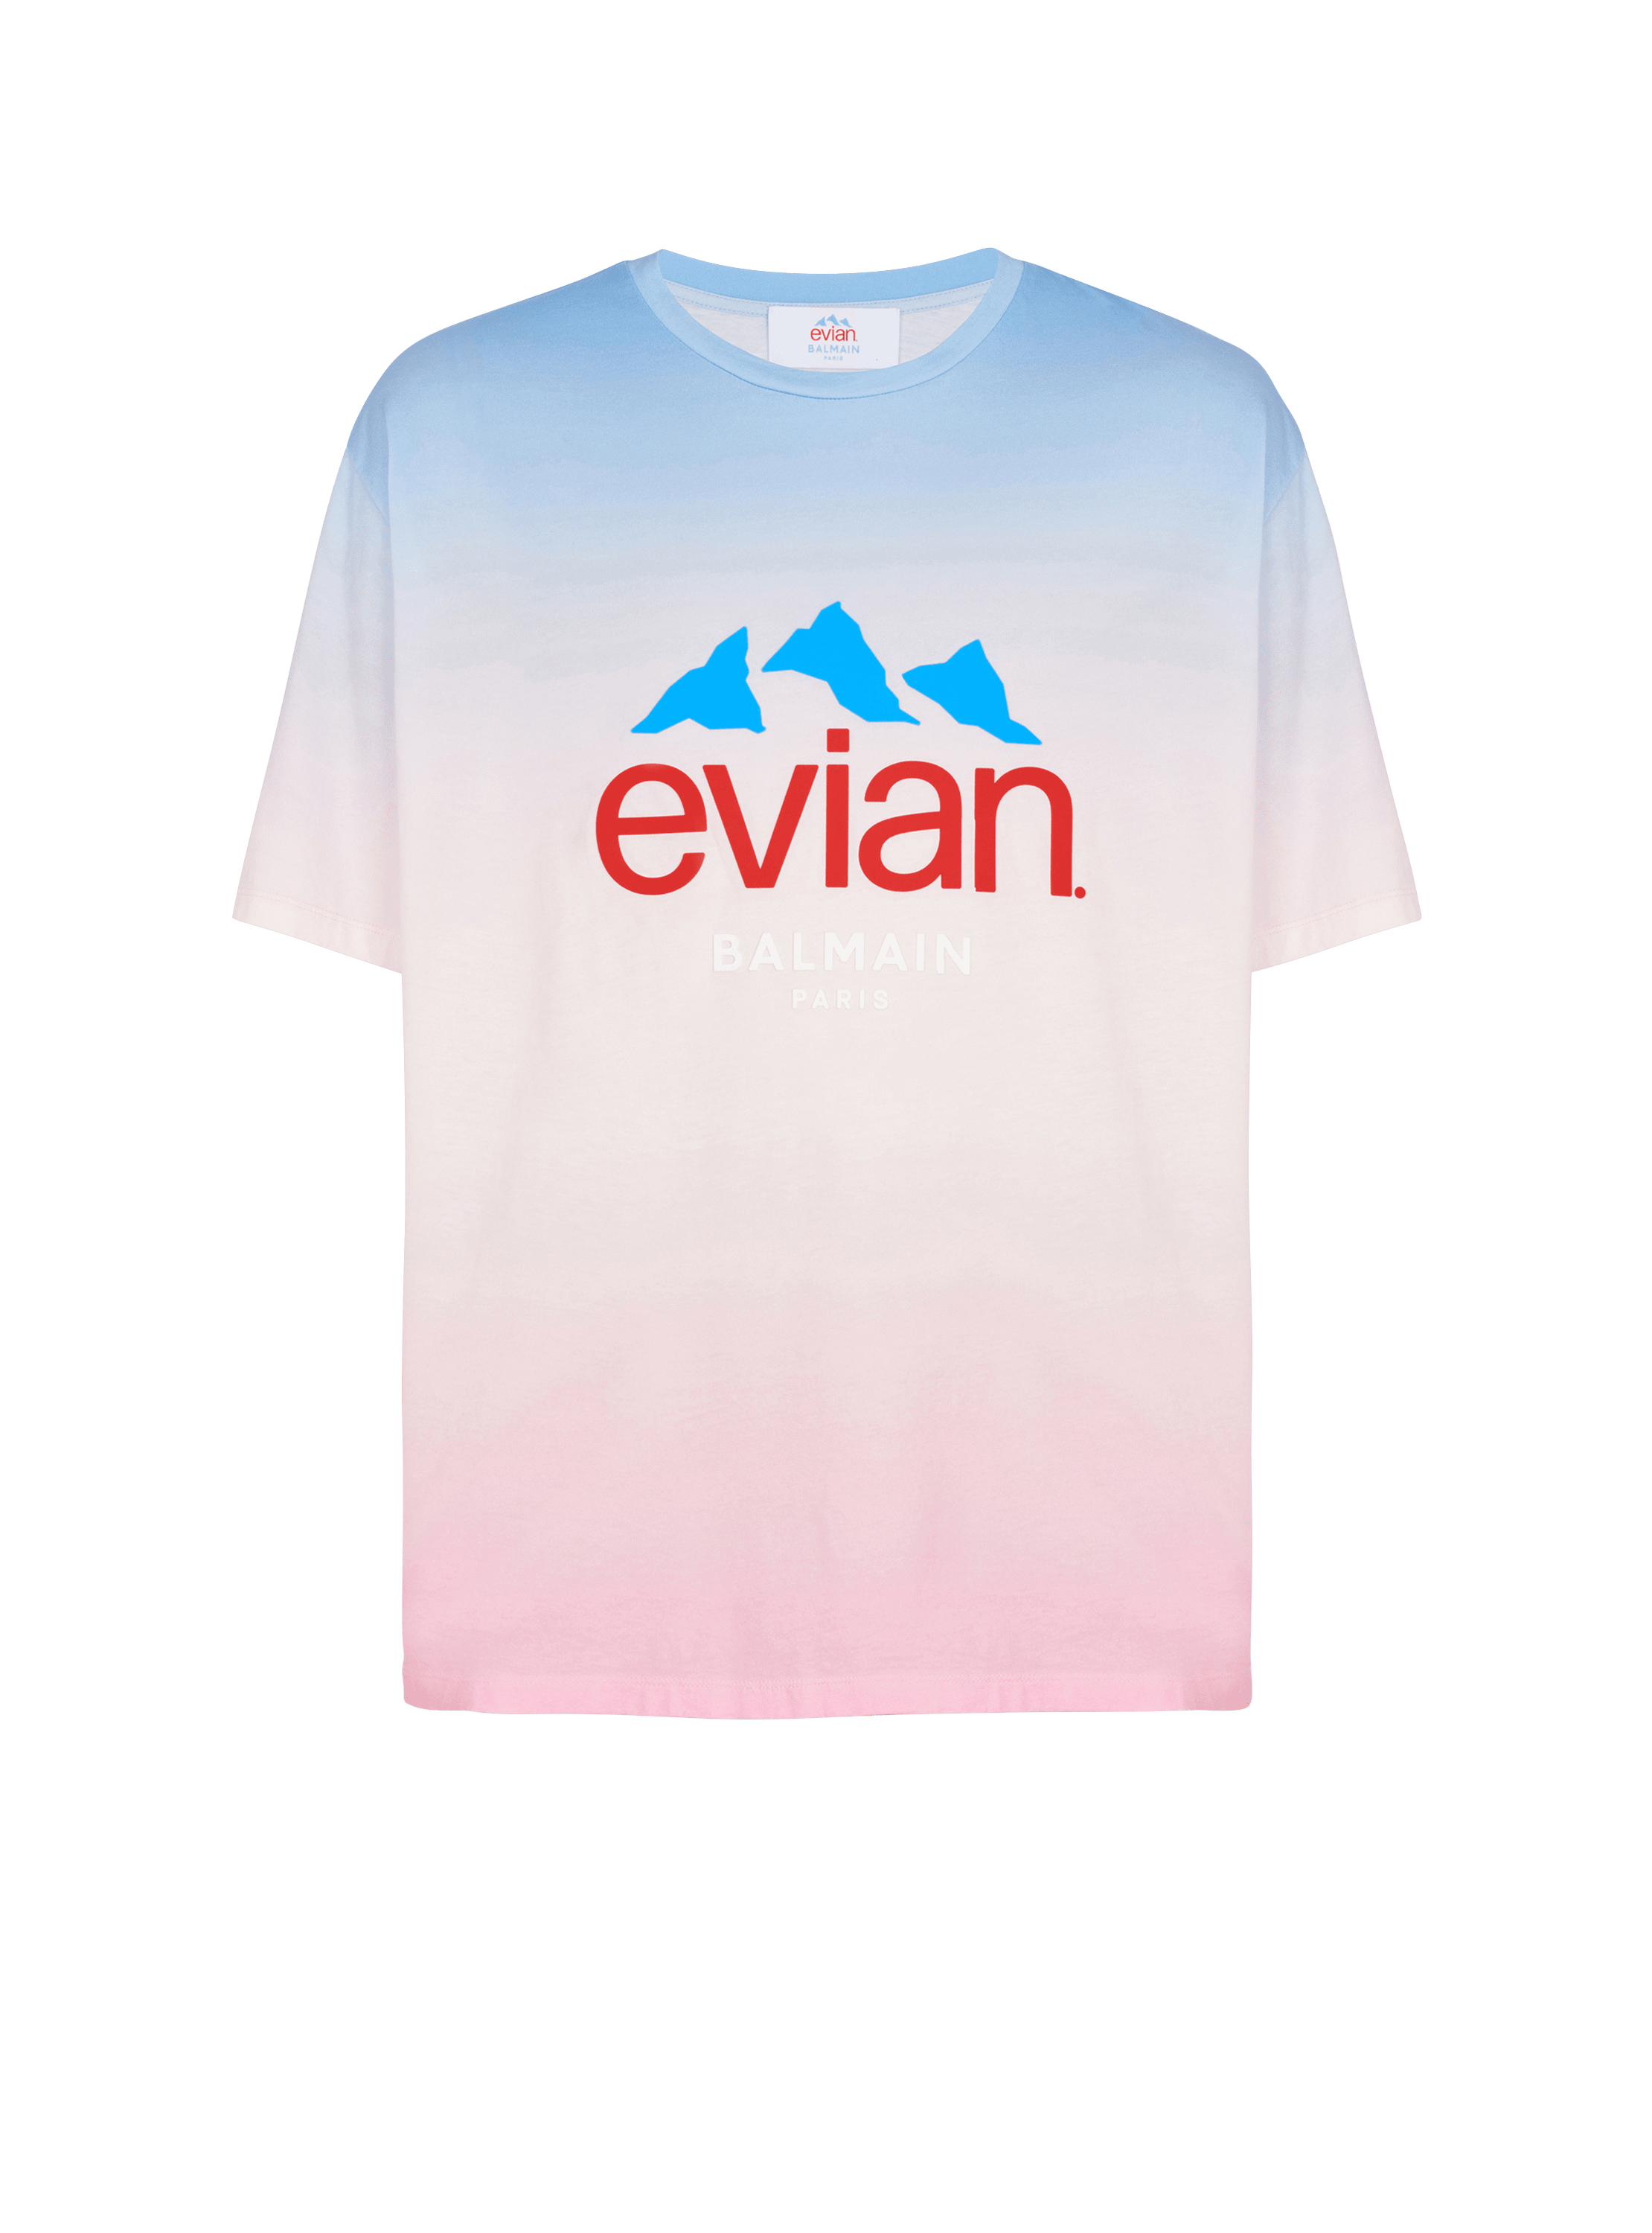 Balmain x Evian - Camiseta con degradado